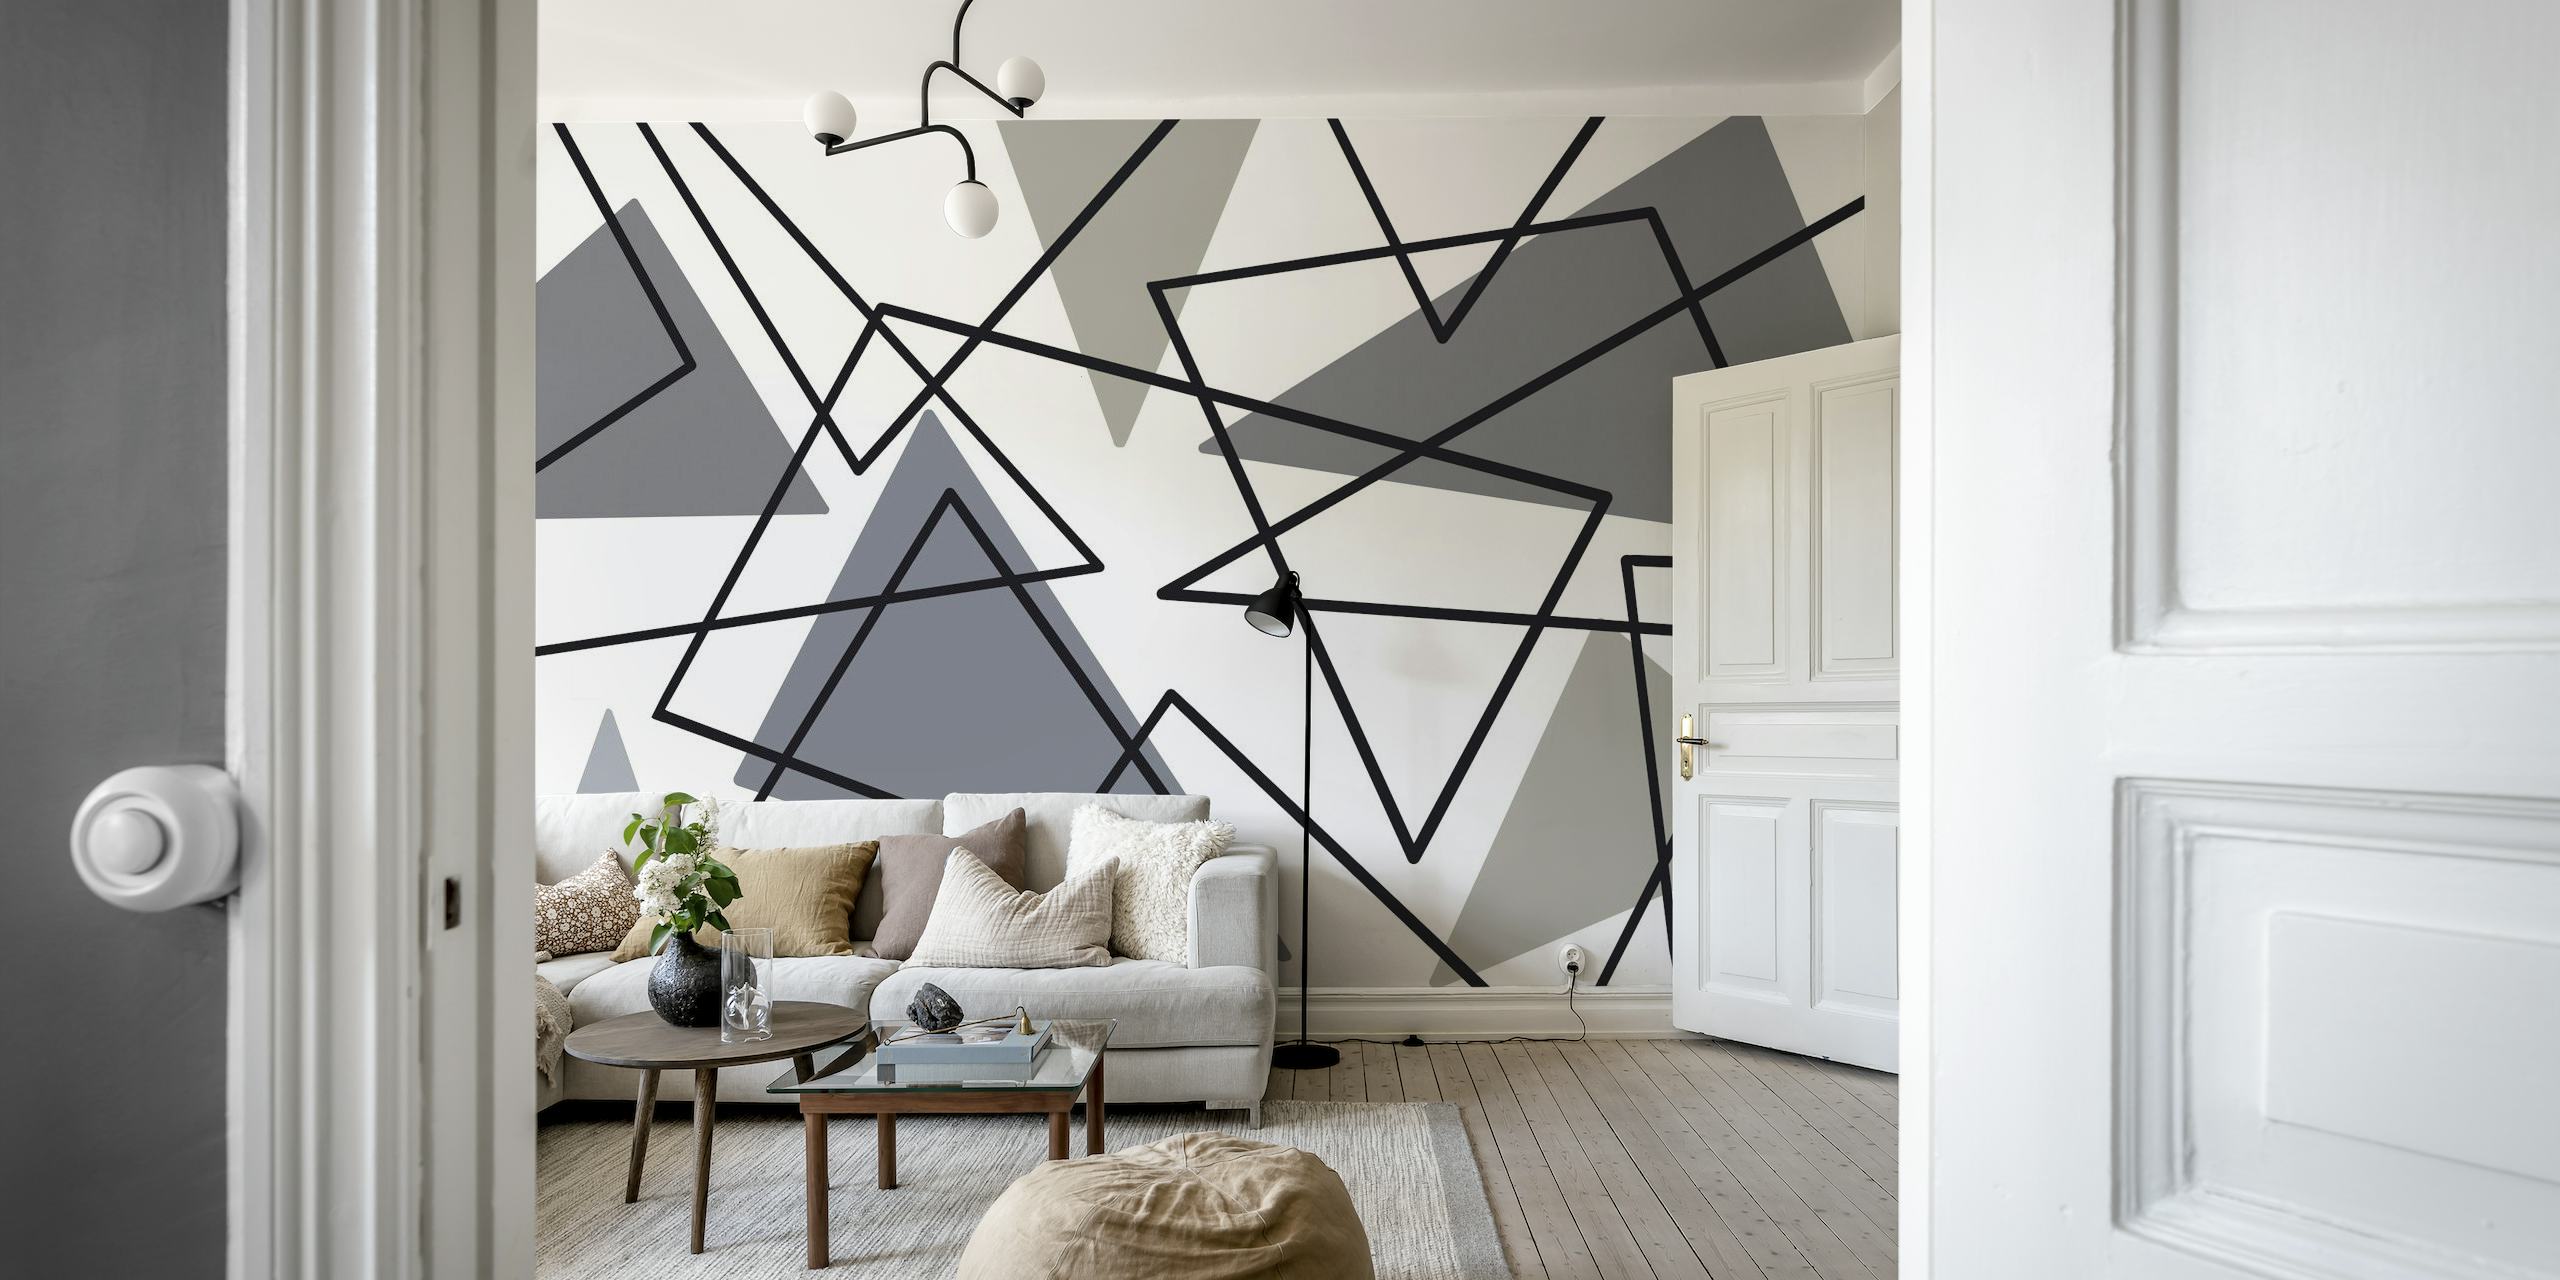 Abstraktes, minimalistisches Wandbild mit Dreiecksmuster in Graustufen